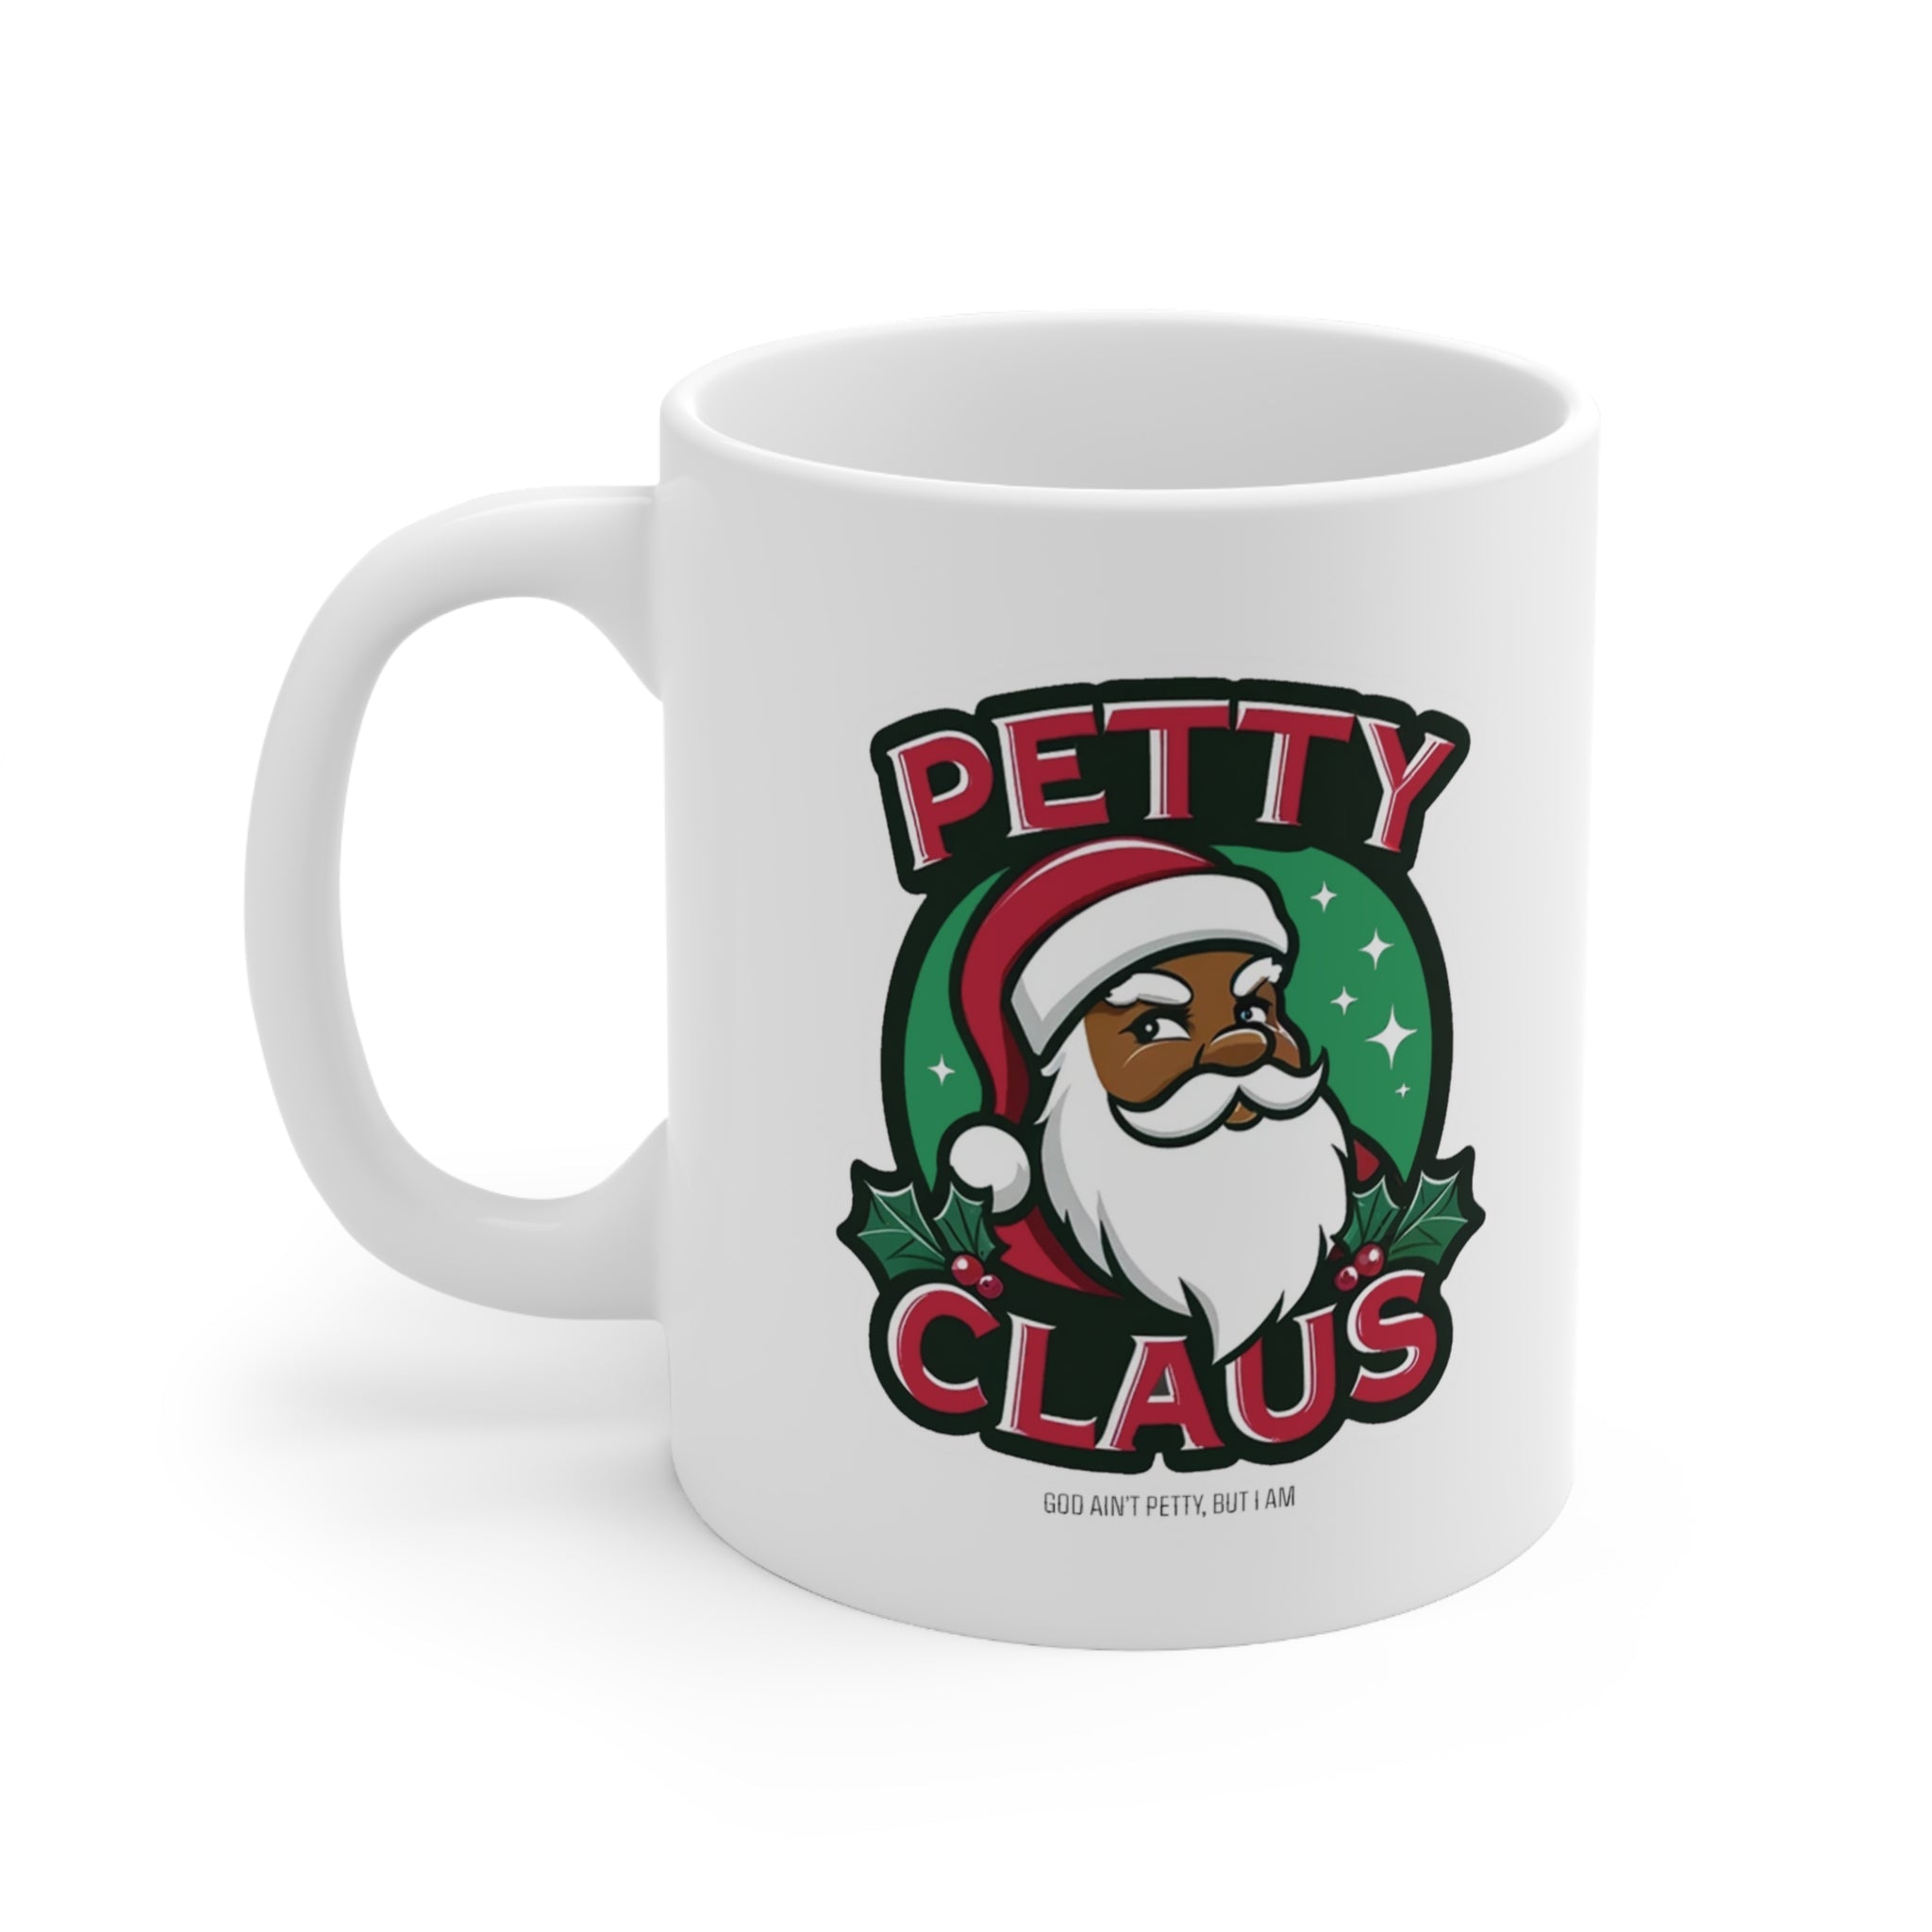 Petty Claus Image Ceramic Mug 11oz-Mug-The Original God Ain't Petty But I Am